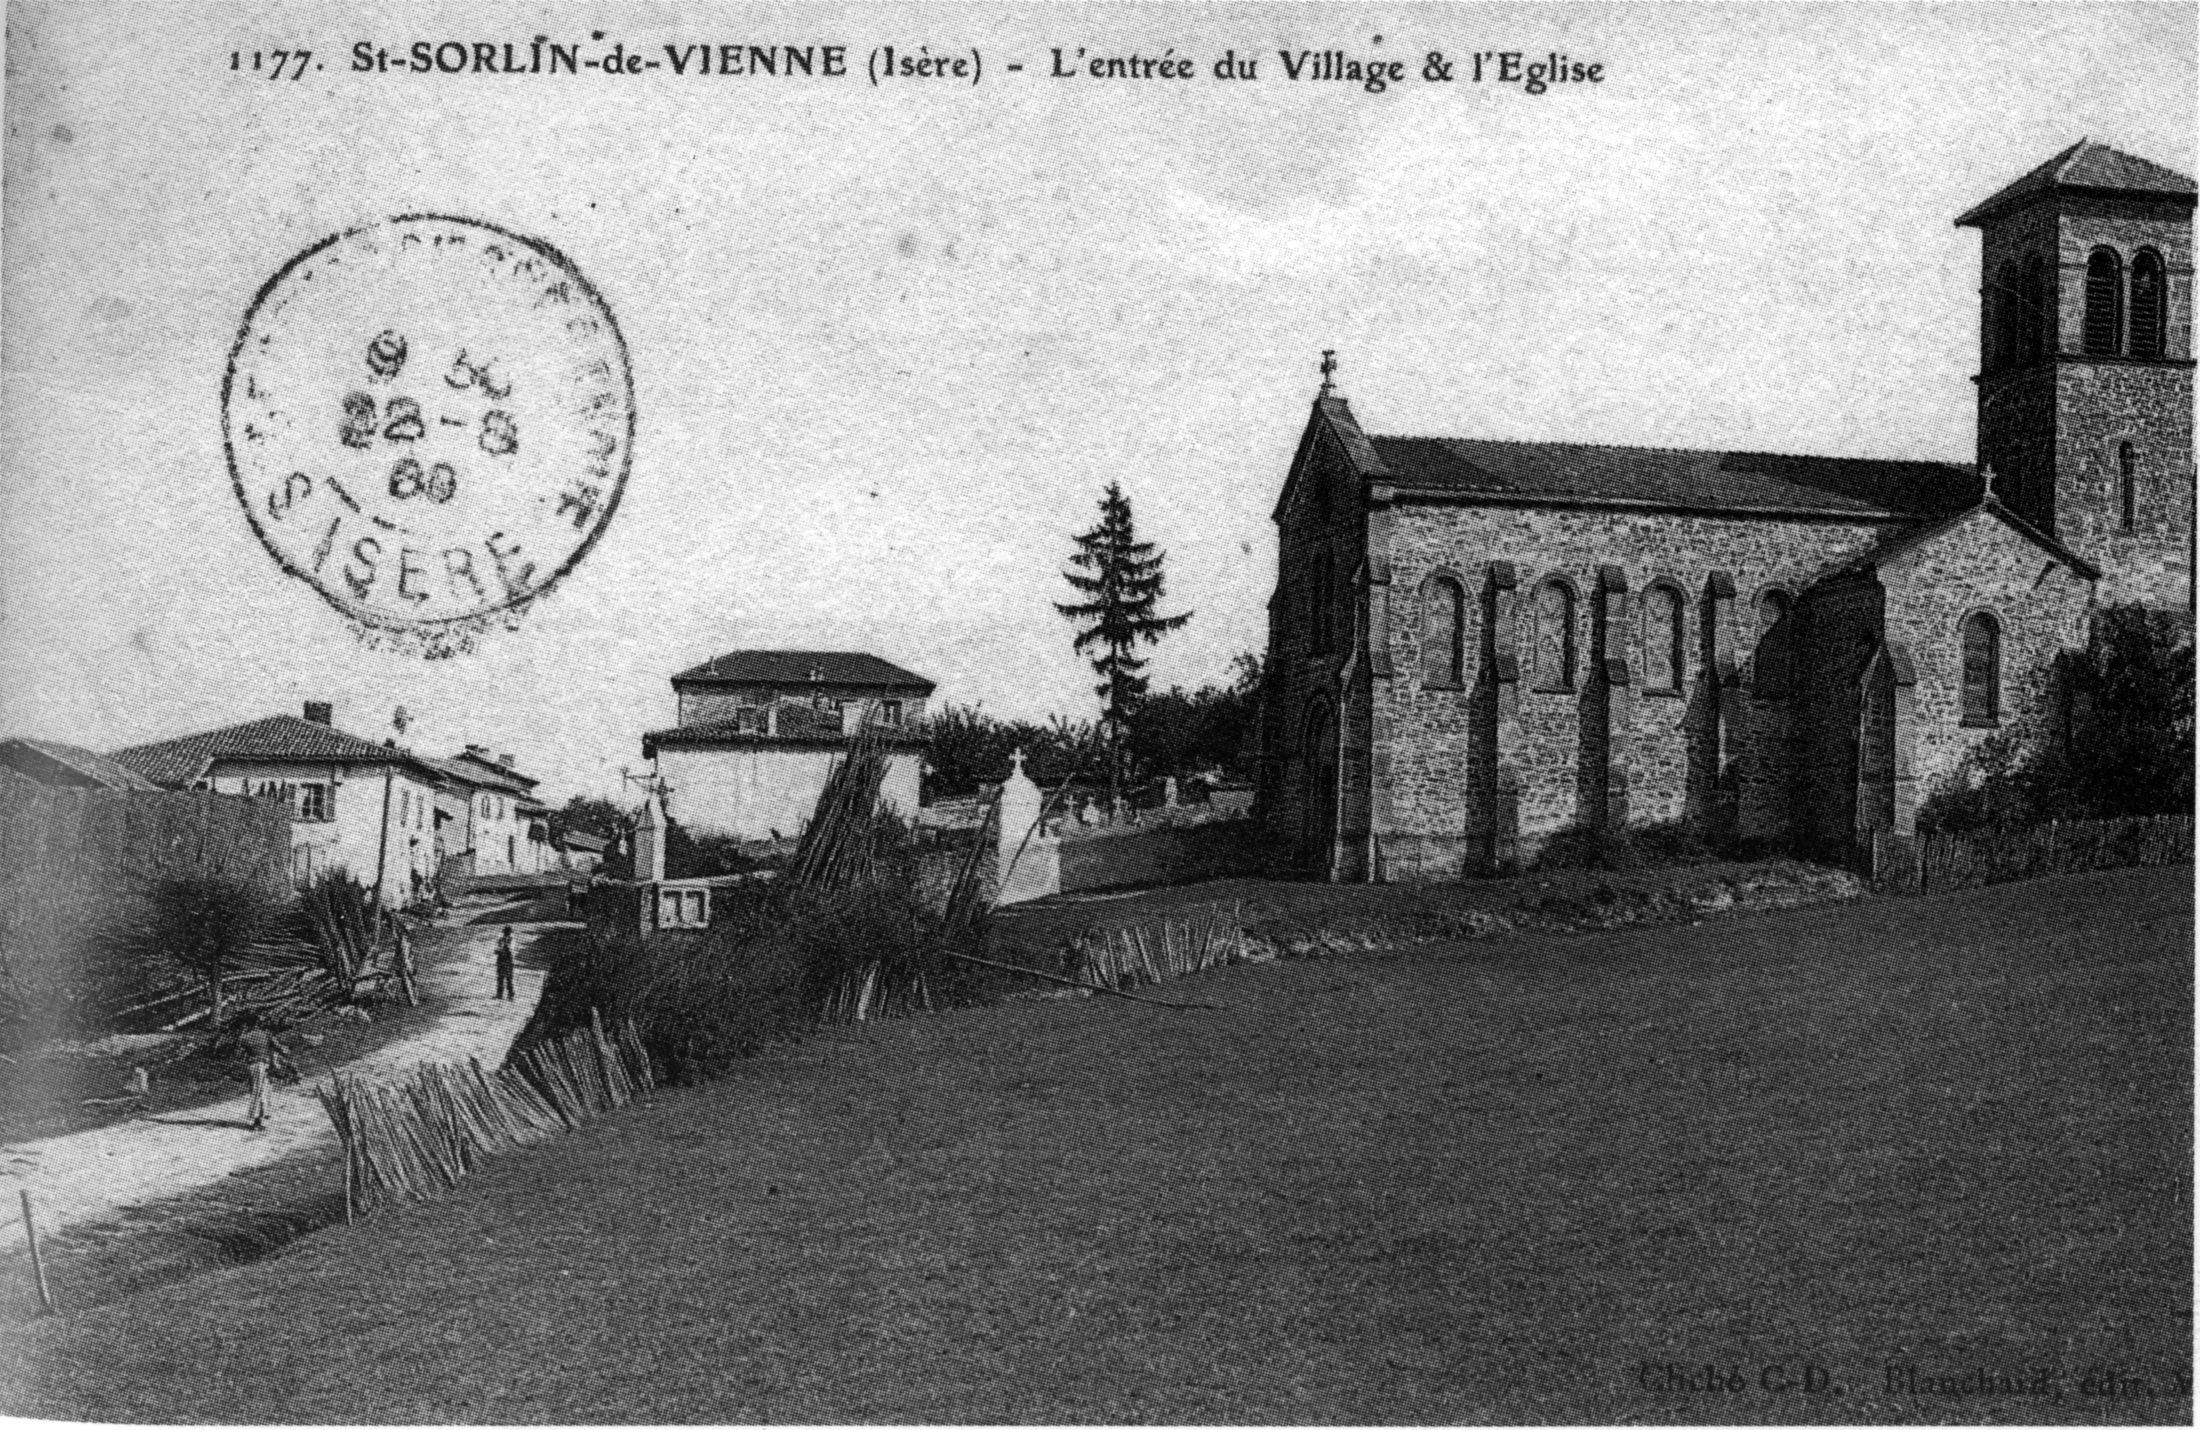 Saint-sorlin-de-vienne